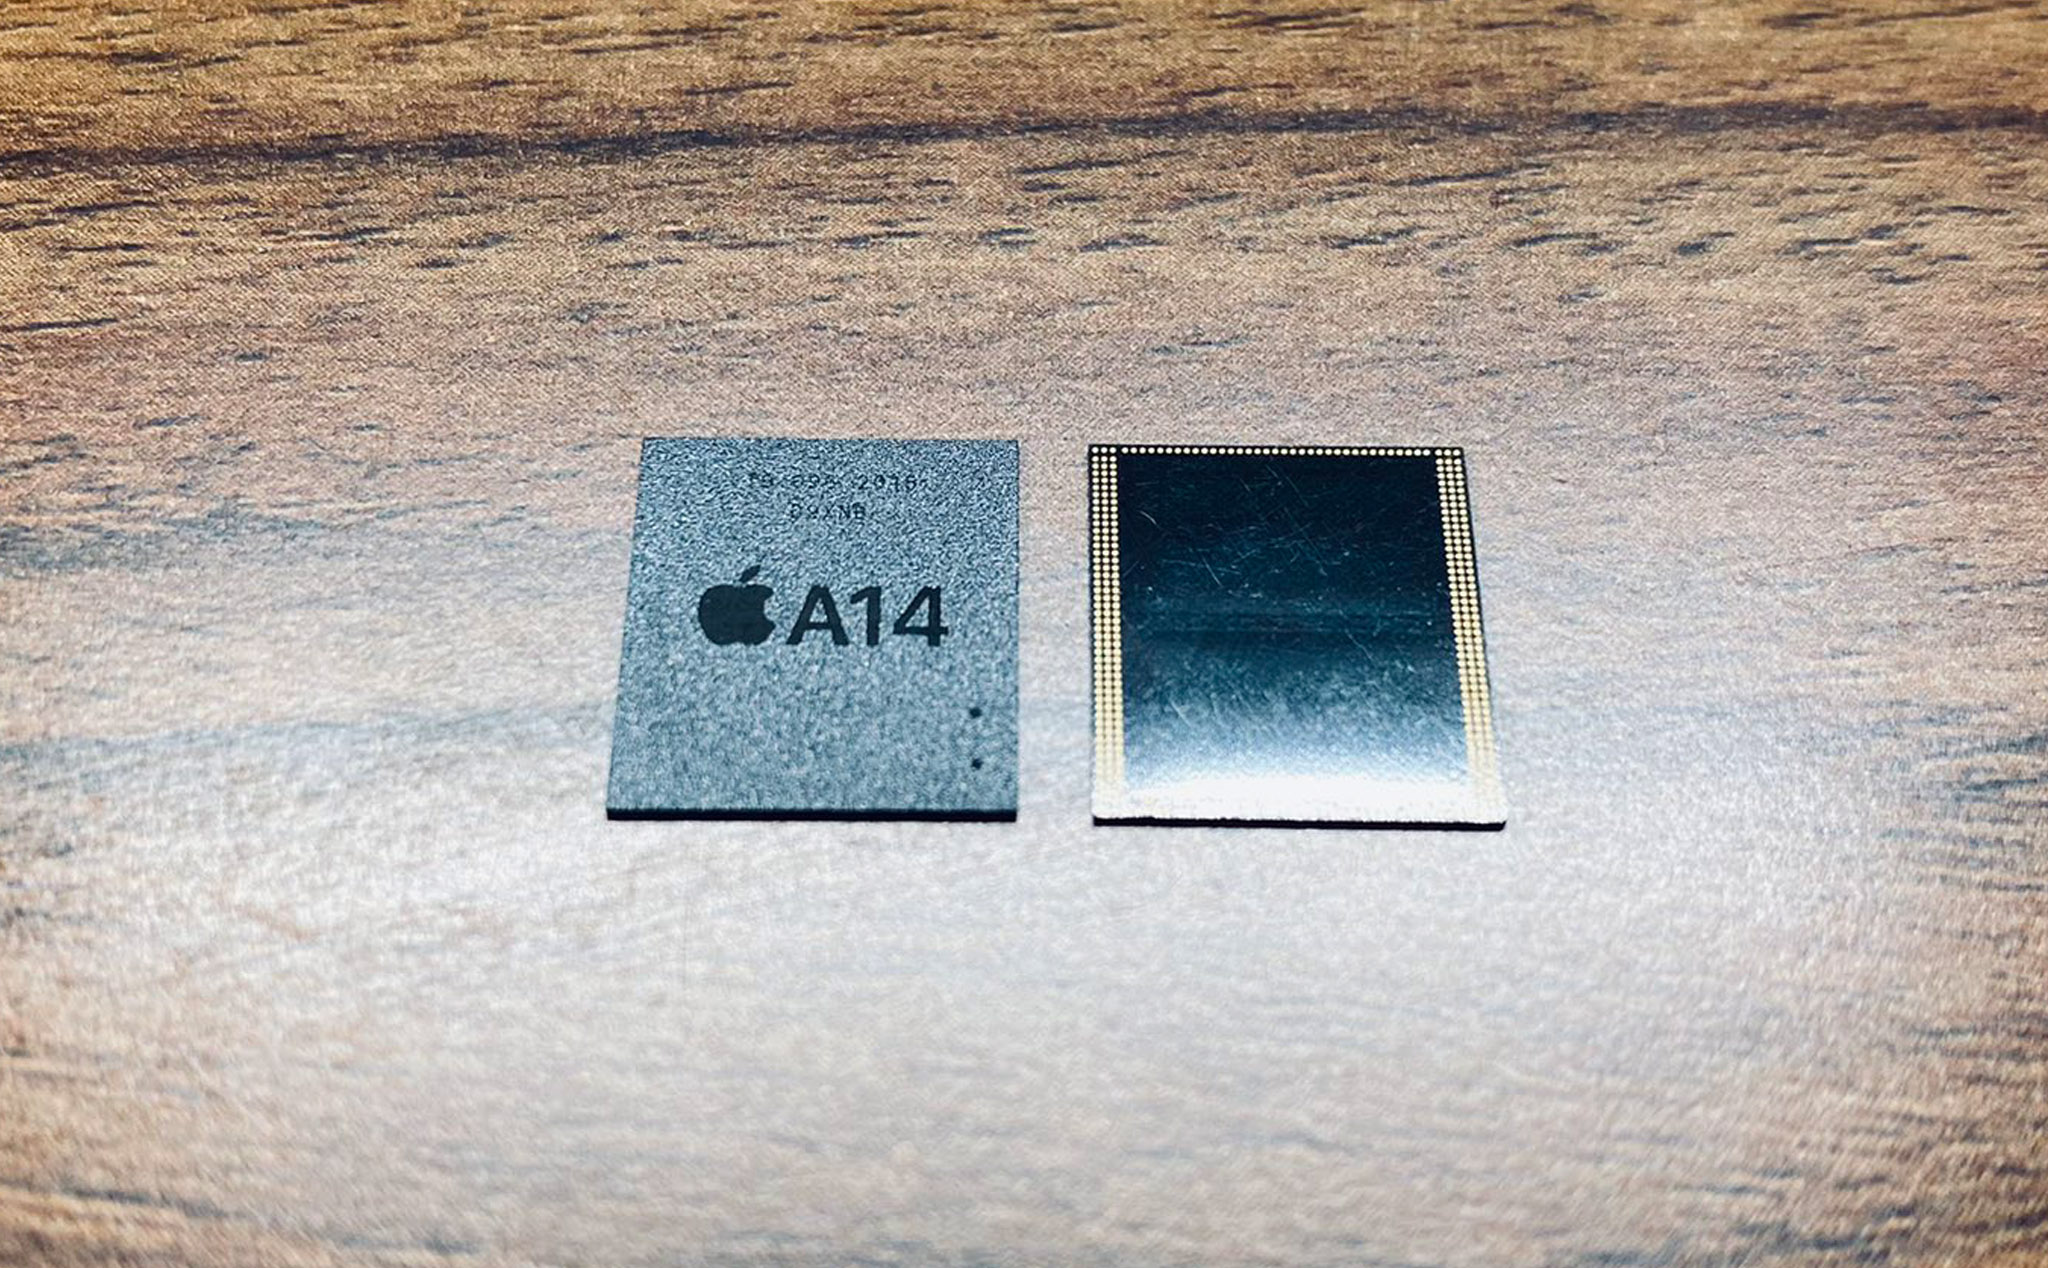 Đây là chip RAM của SoC Apple A14 Bionic, sẽ ra mắt trên iPhone 12?